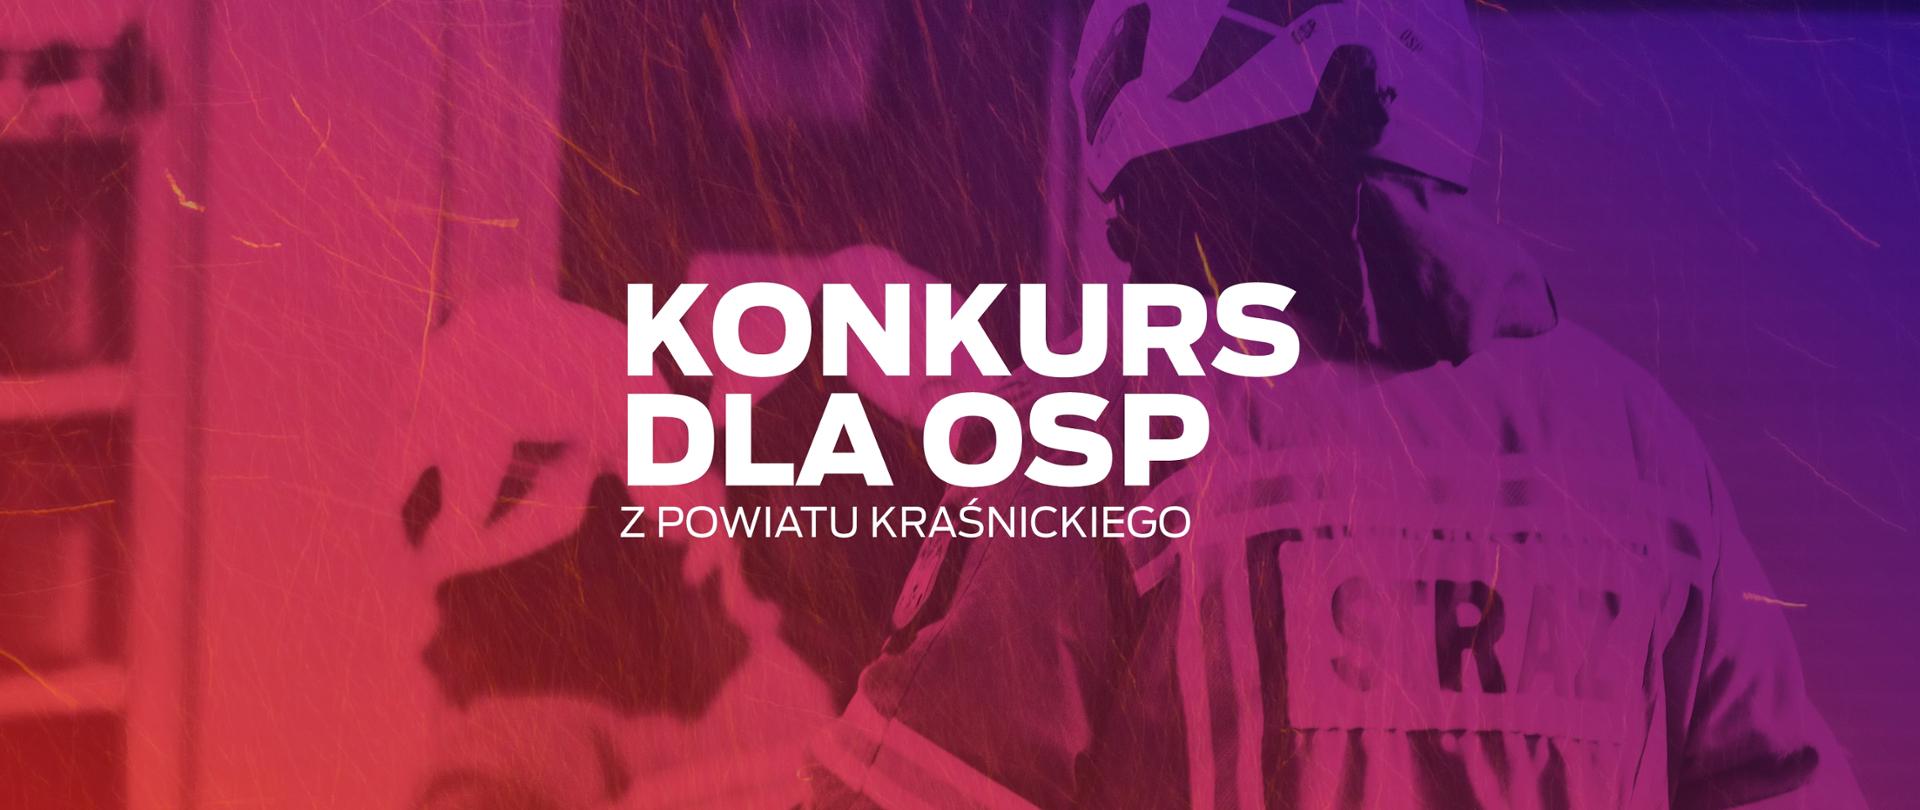 Grafika przedstawia biały napis dużymi literami: "Konkurs dla OSP z Powiatu Kraśnickiego" na kolorowym tle. Tło w kolorach czerwieni i fioletu, przedstawia sylwetki strażaków w strojach gaśniczych. Na tle. wokół napisu unoszą się rozmazane iskry.